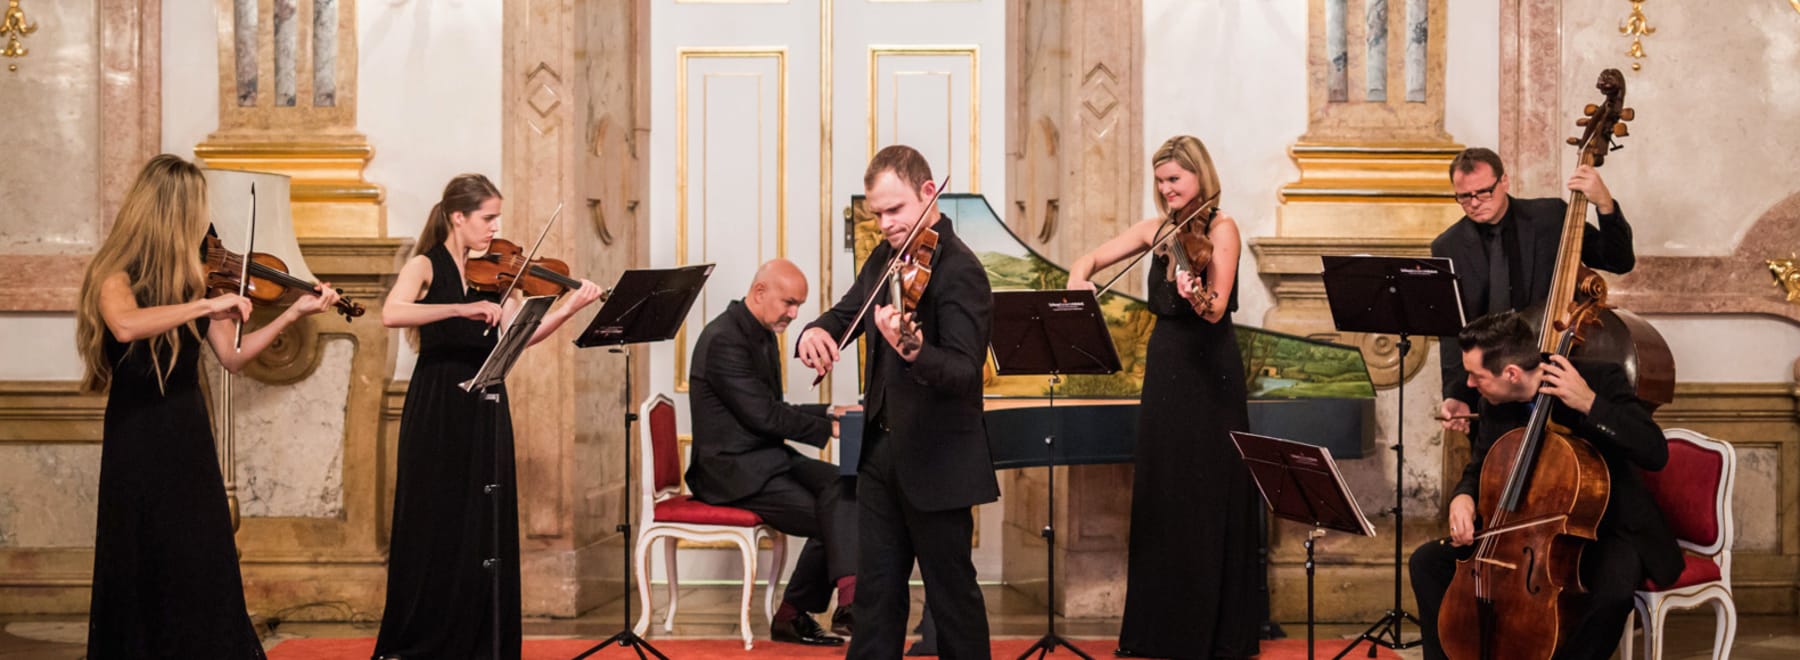 concerts at Mirabell Palace Salzburg